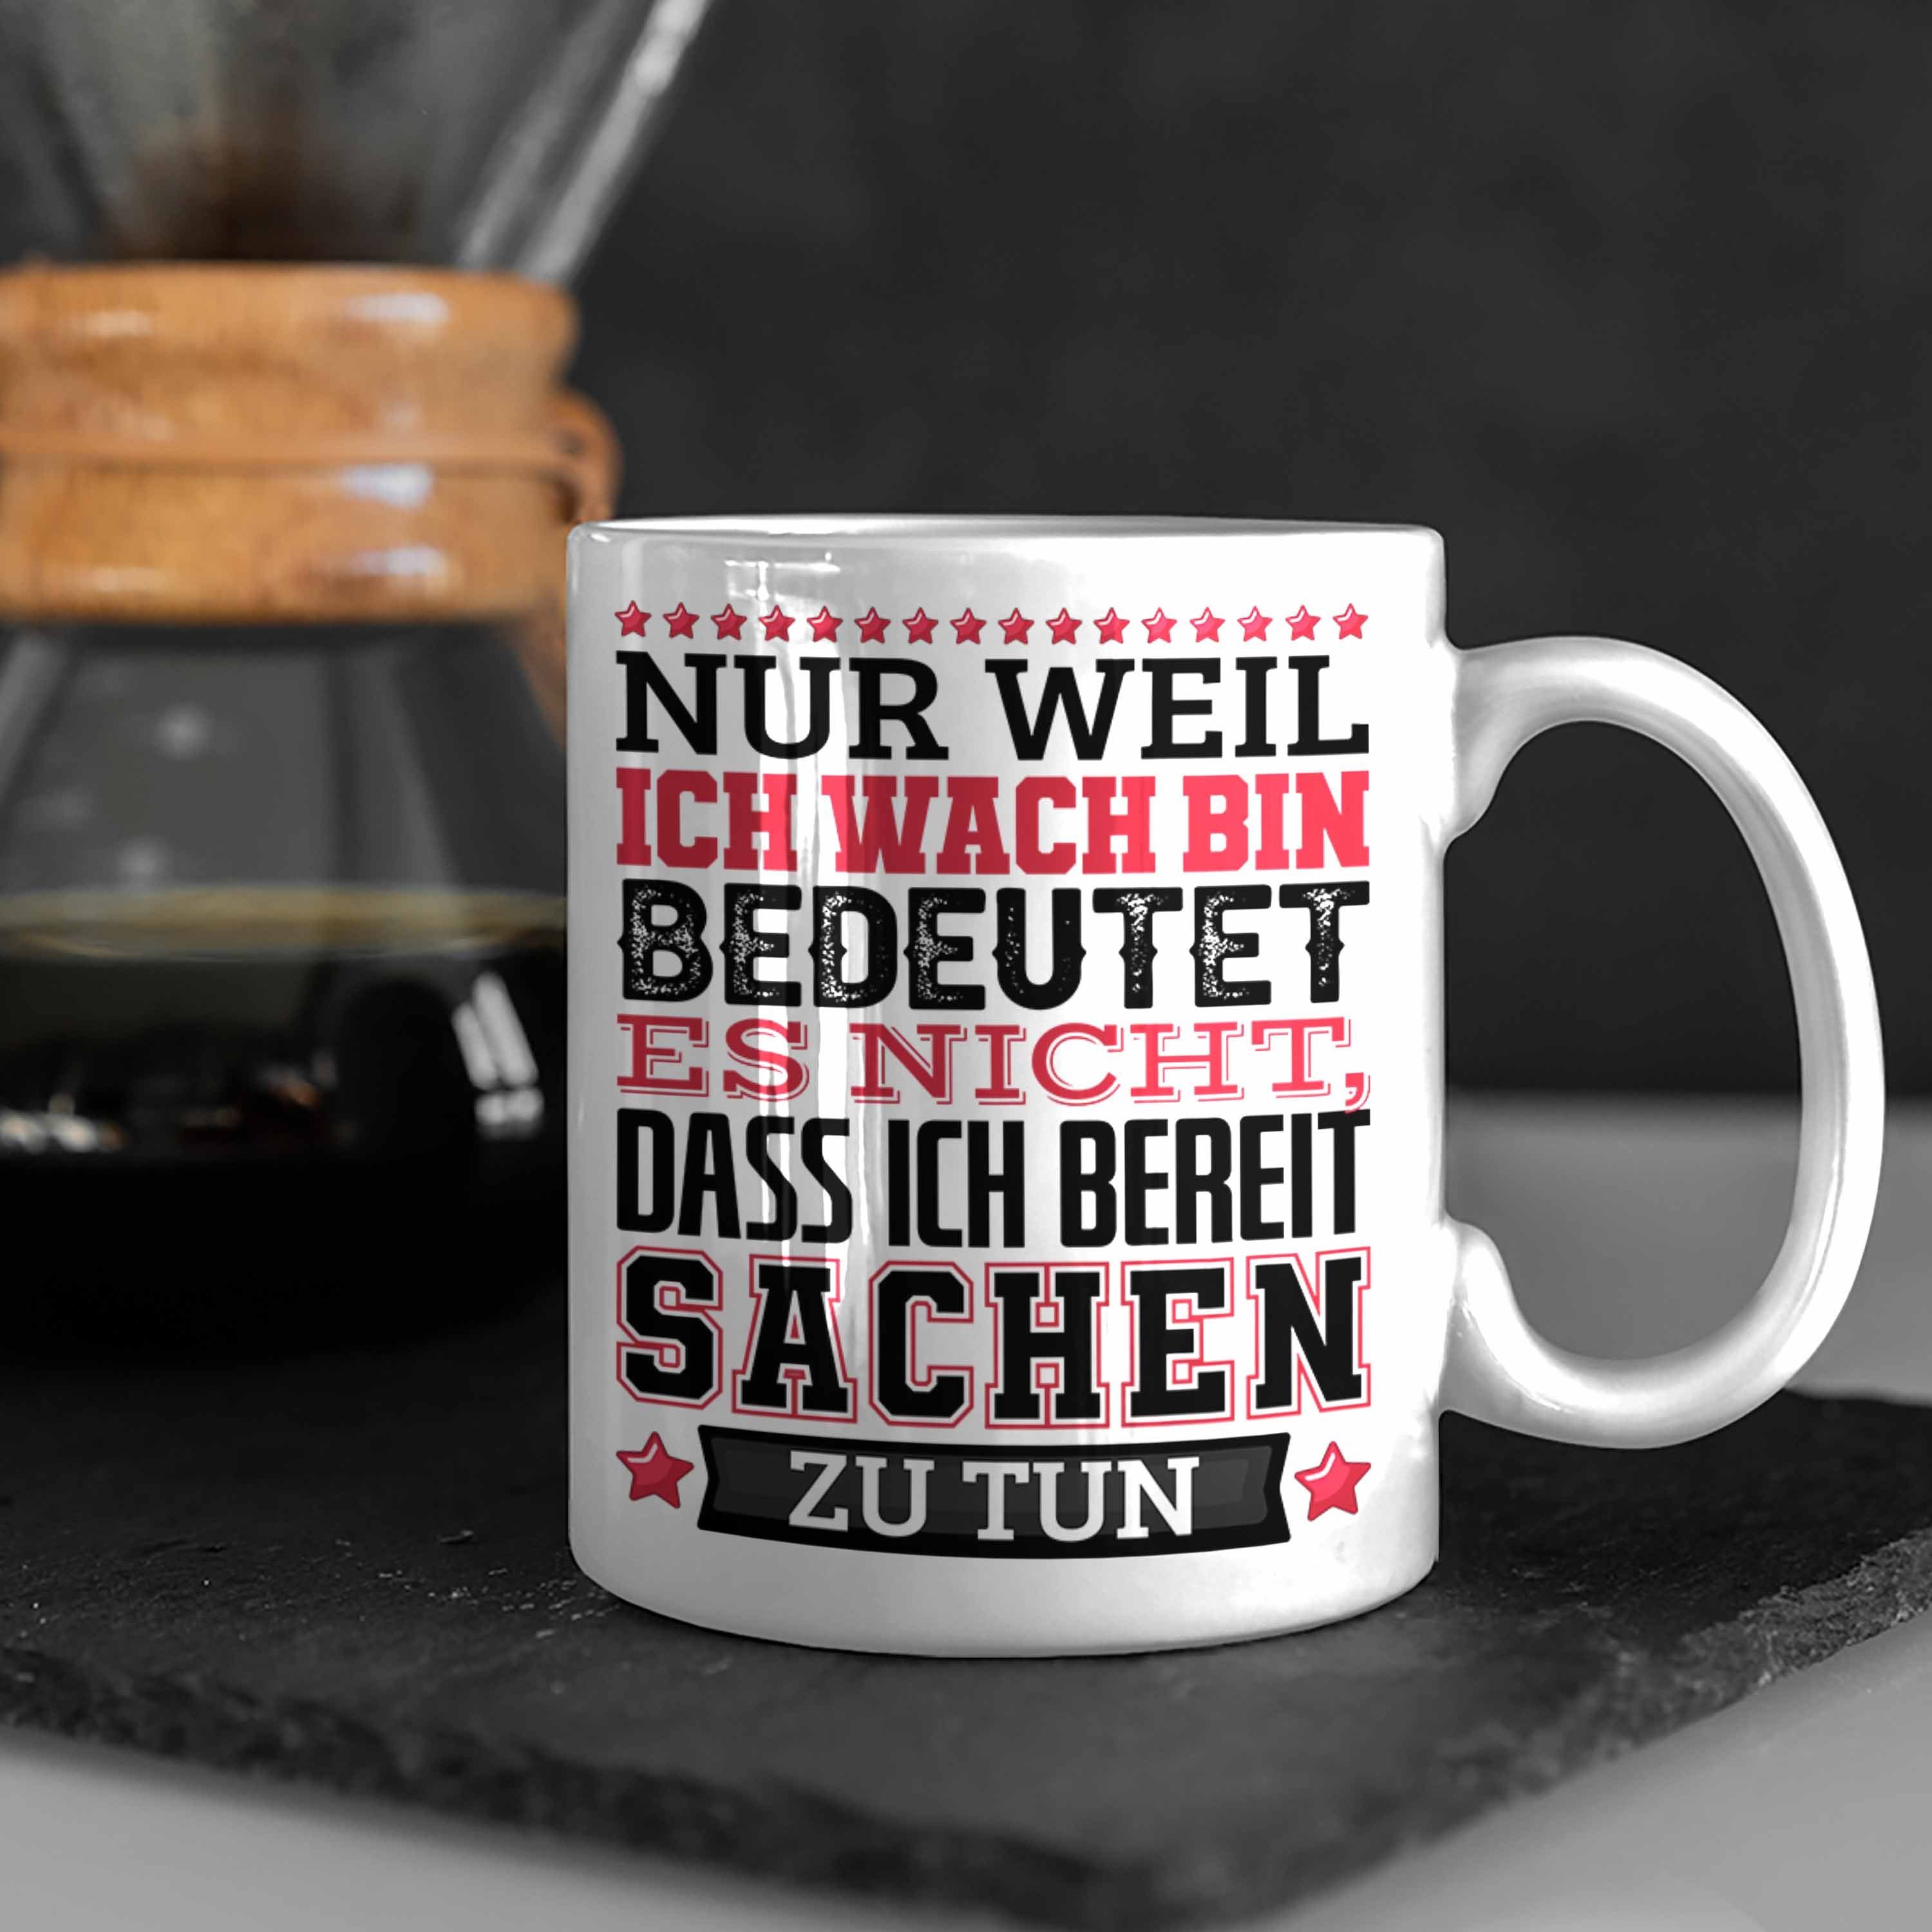 Trendation Tasse Lustiger Spruch Tasse Bin Weil Nur Es Kaffee-Becher Nic Ich Heißt Wach Weiss